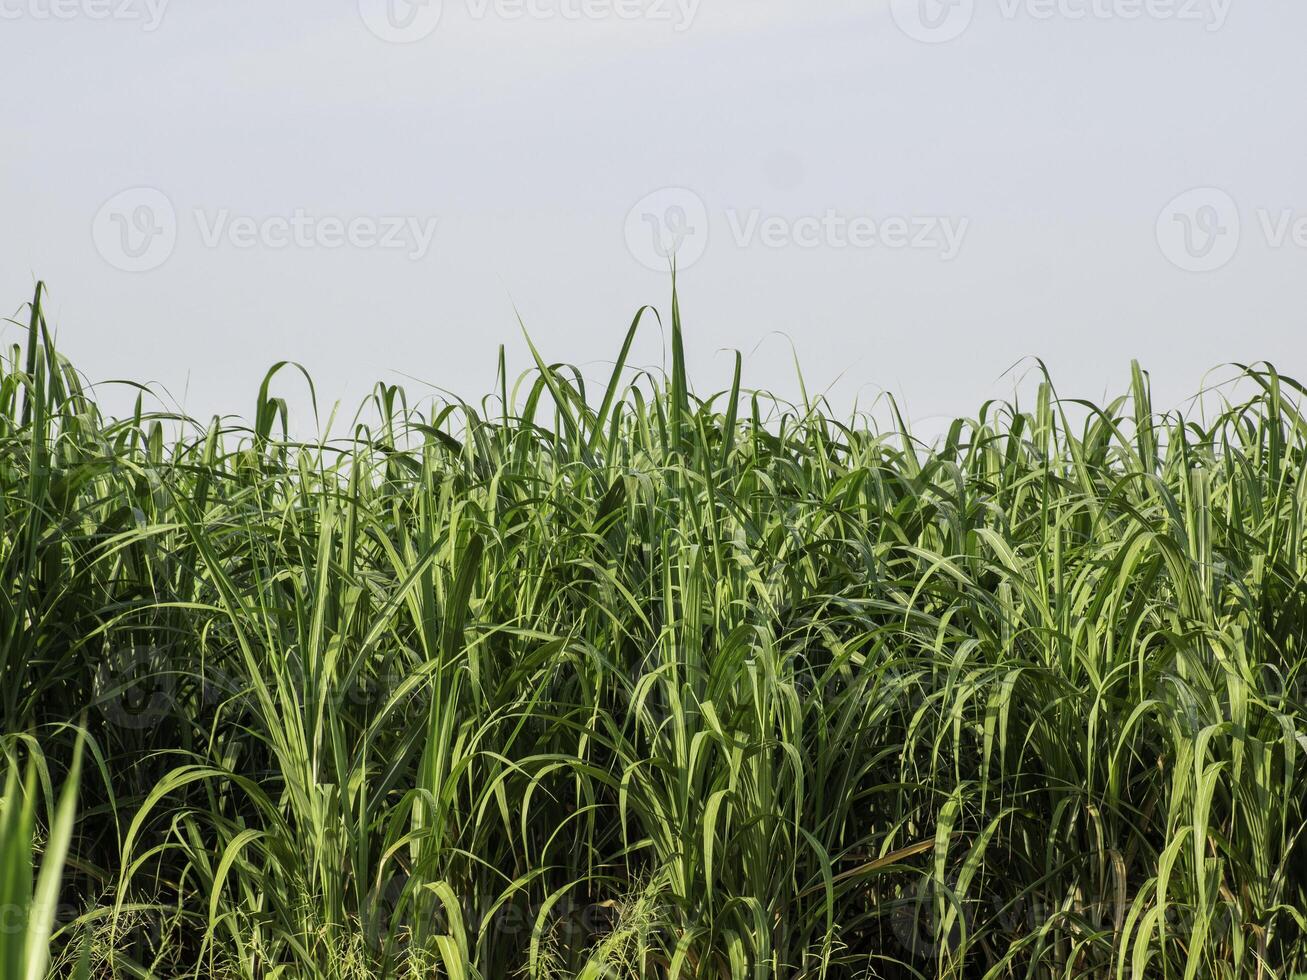 champ de canne à sucre au lever du soleil en thaïlande photo